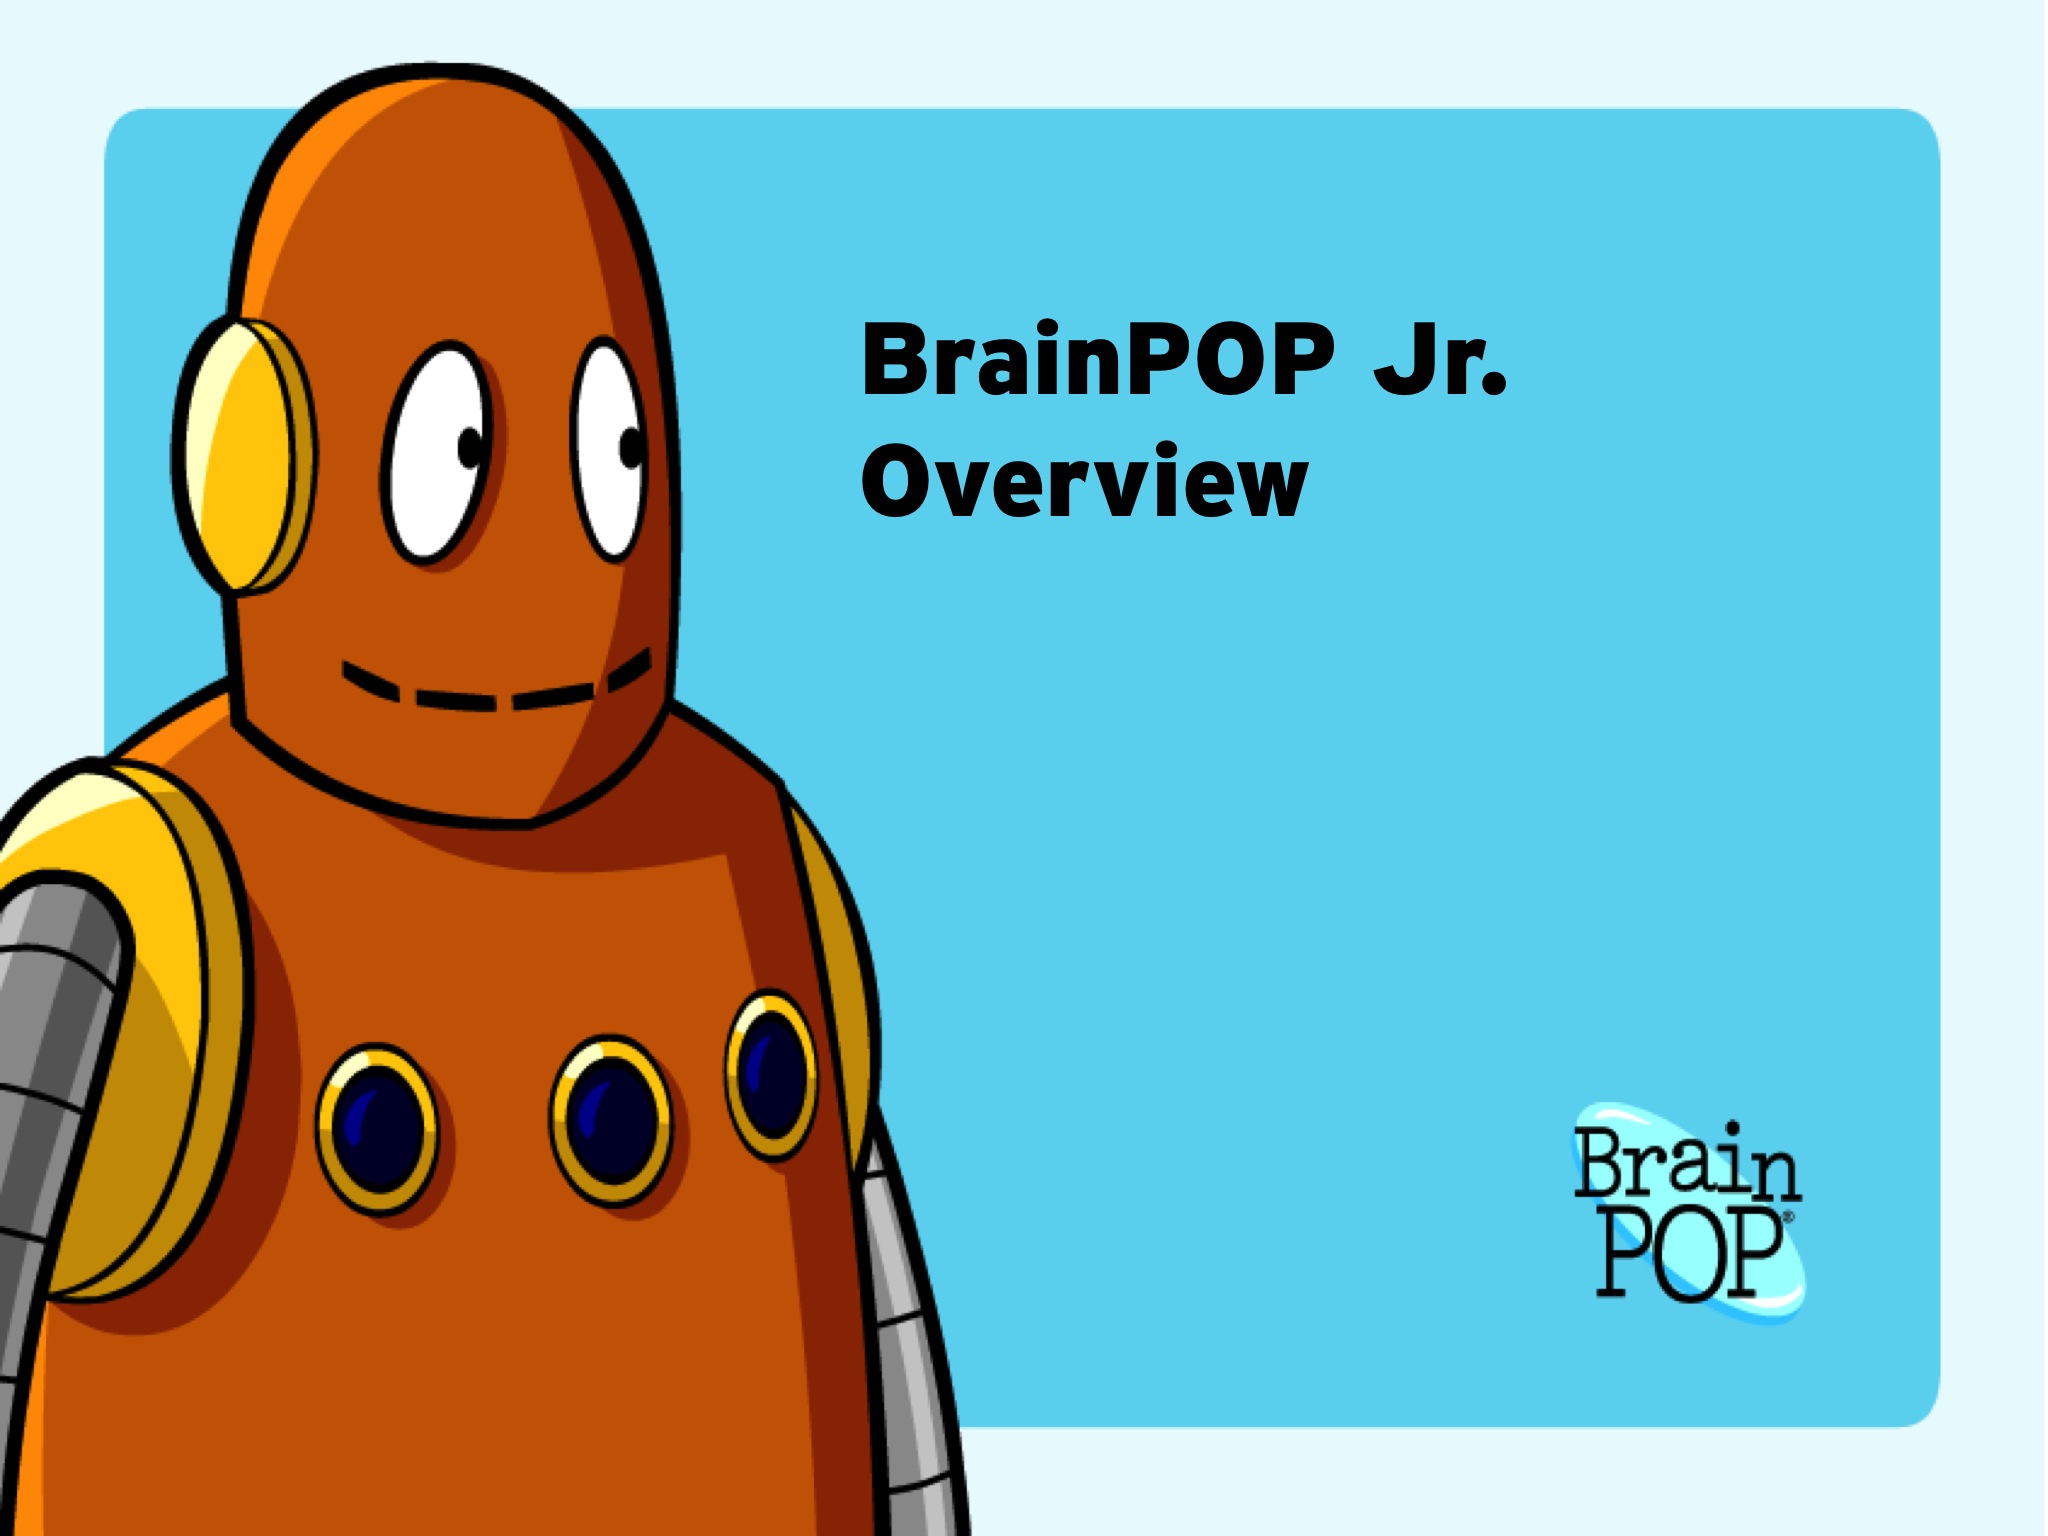 BrainPOP Jr Overview.